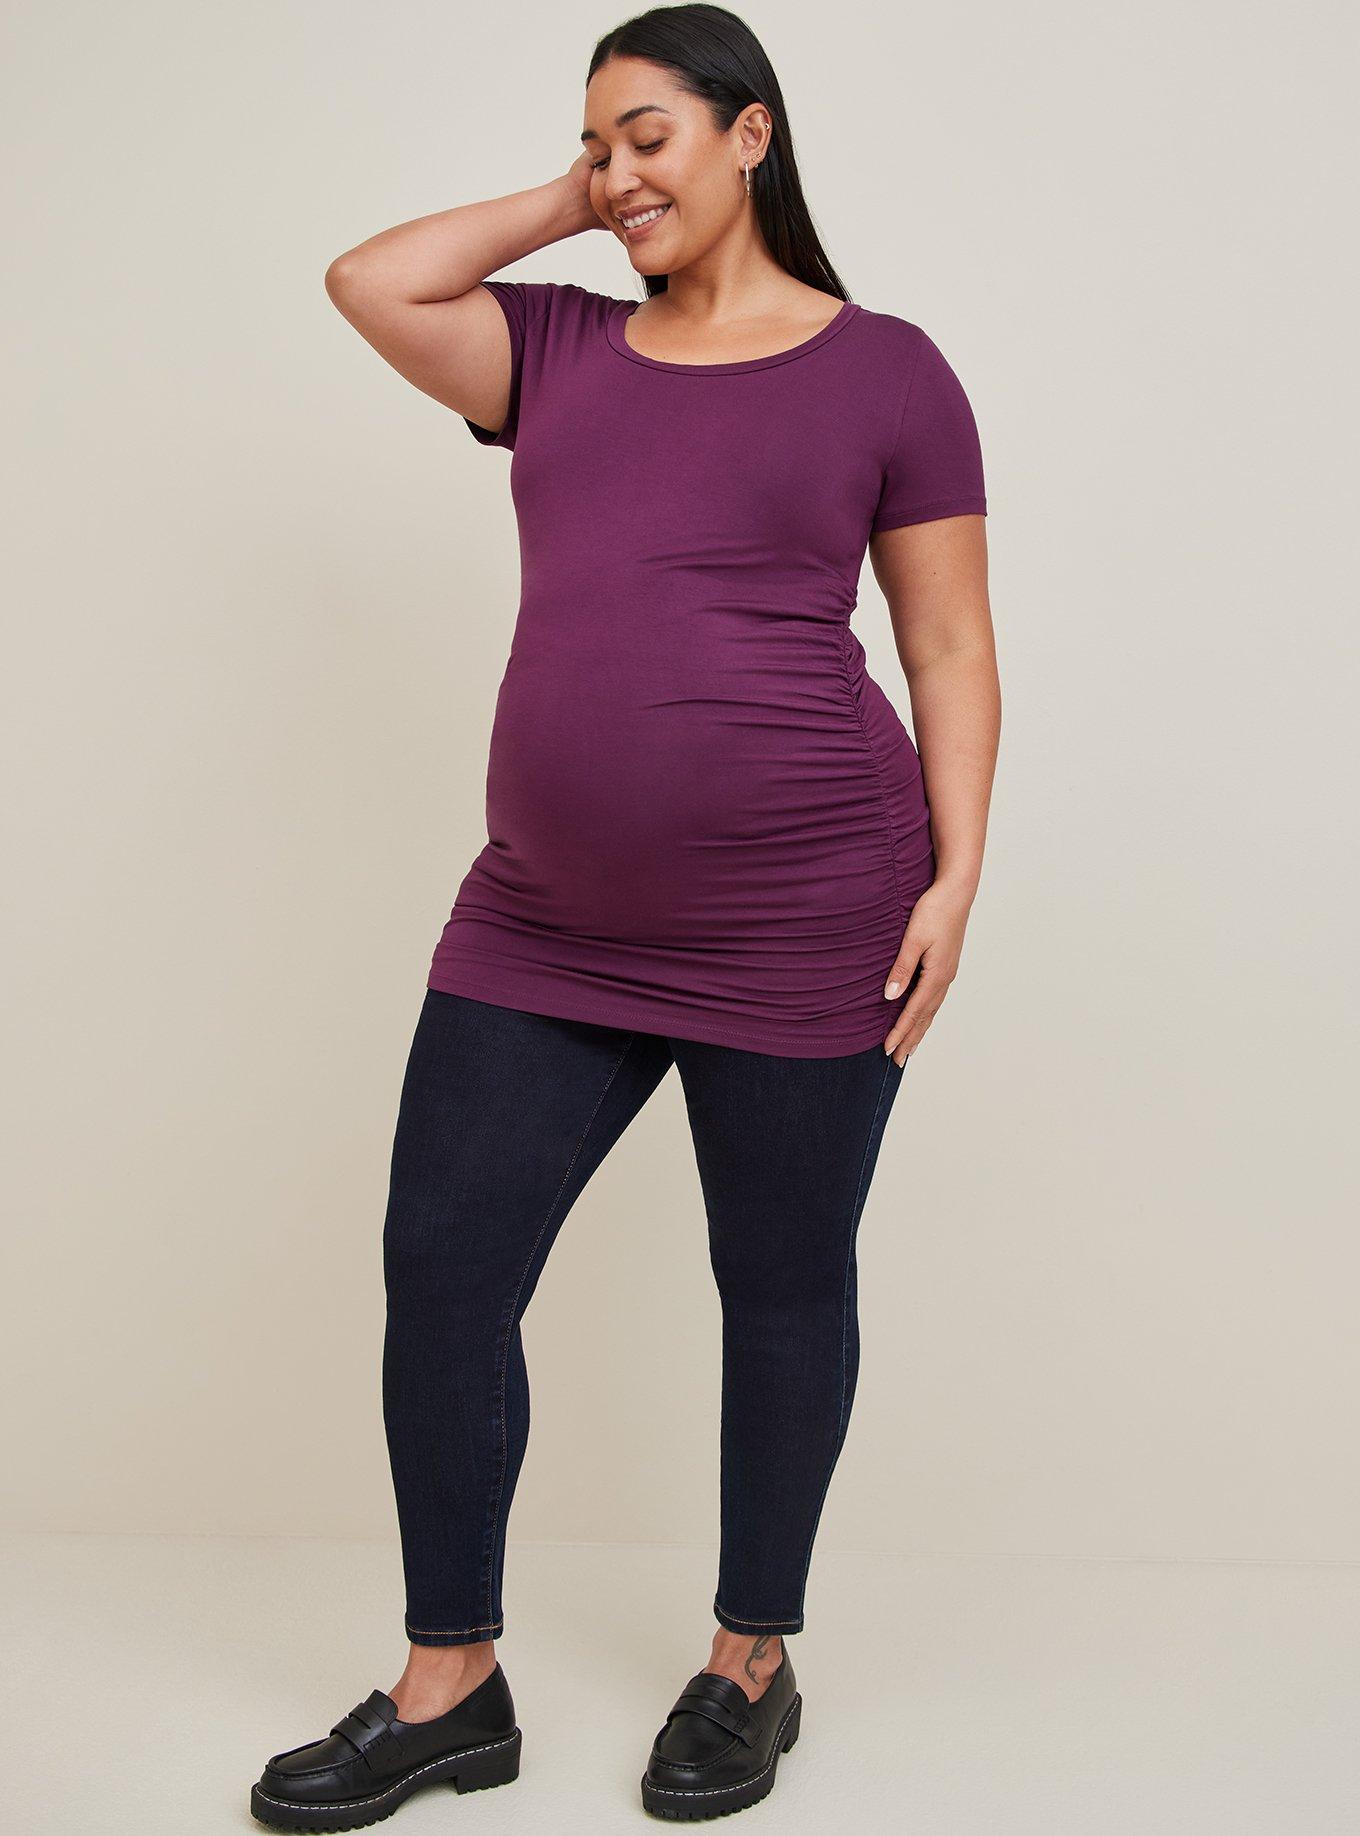 Leggings Depot Women's Maternity Jeans Pregnancy Denim Jeggings